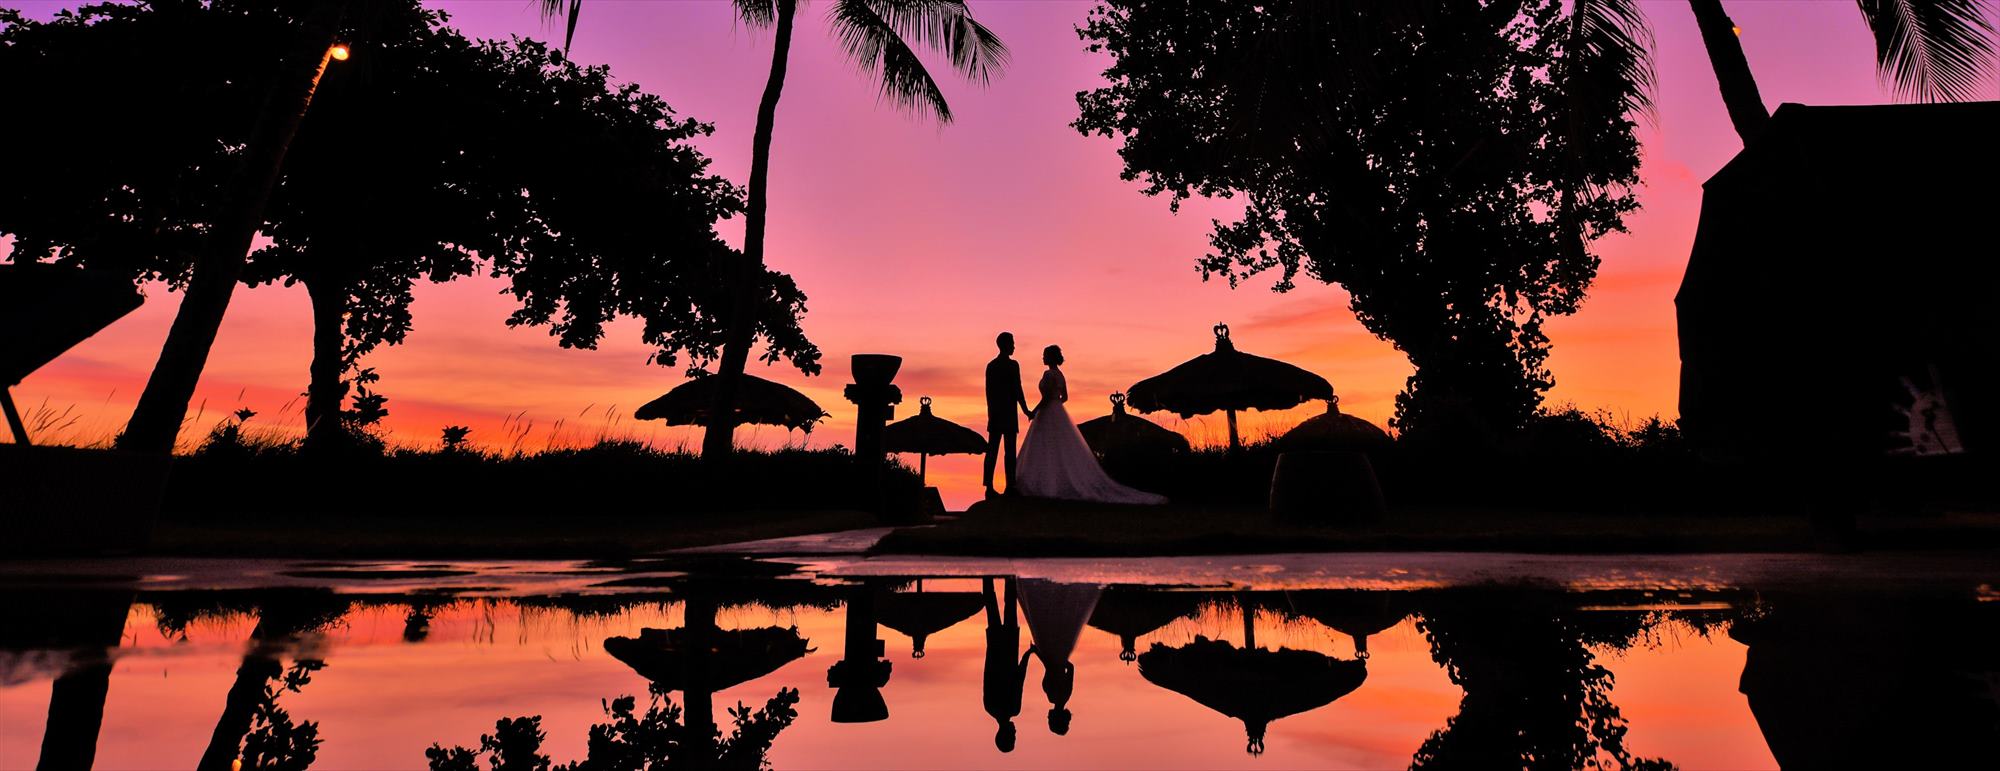 ベルモンド・ジンバラン・プリ・バリ　ウェディング・挙式・結婚式│Belmond Jimbaran Puri Bali Wedding